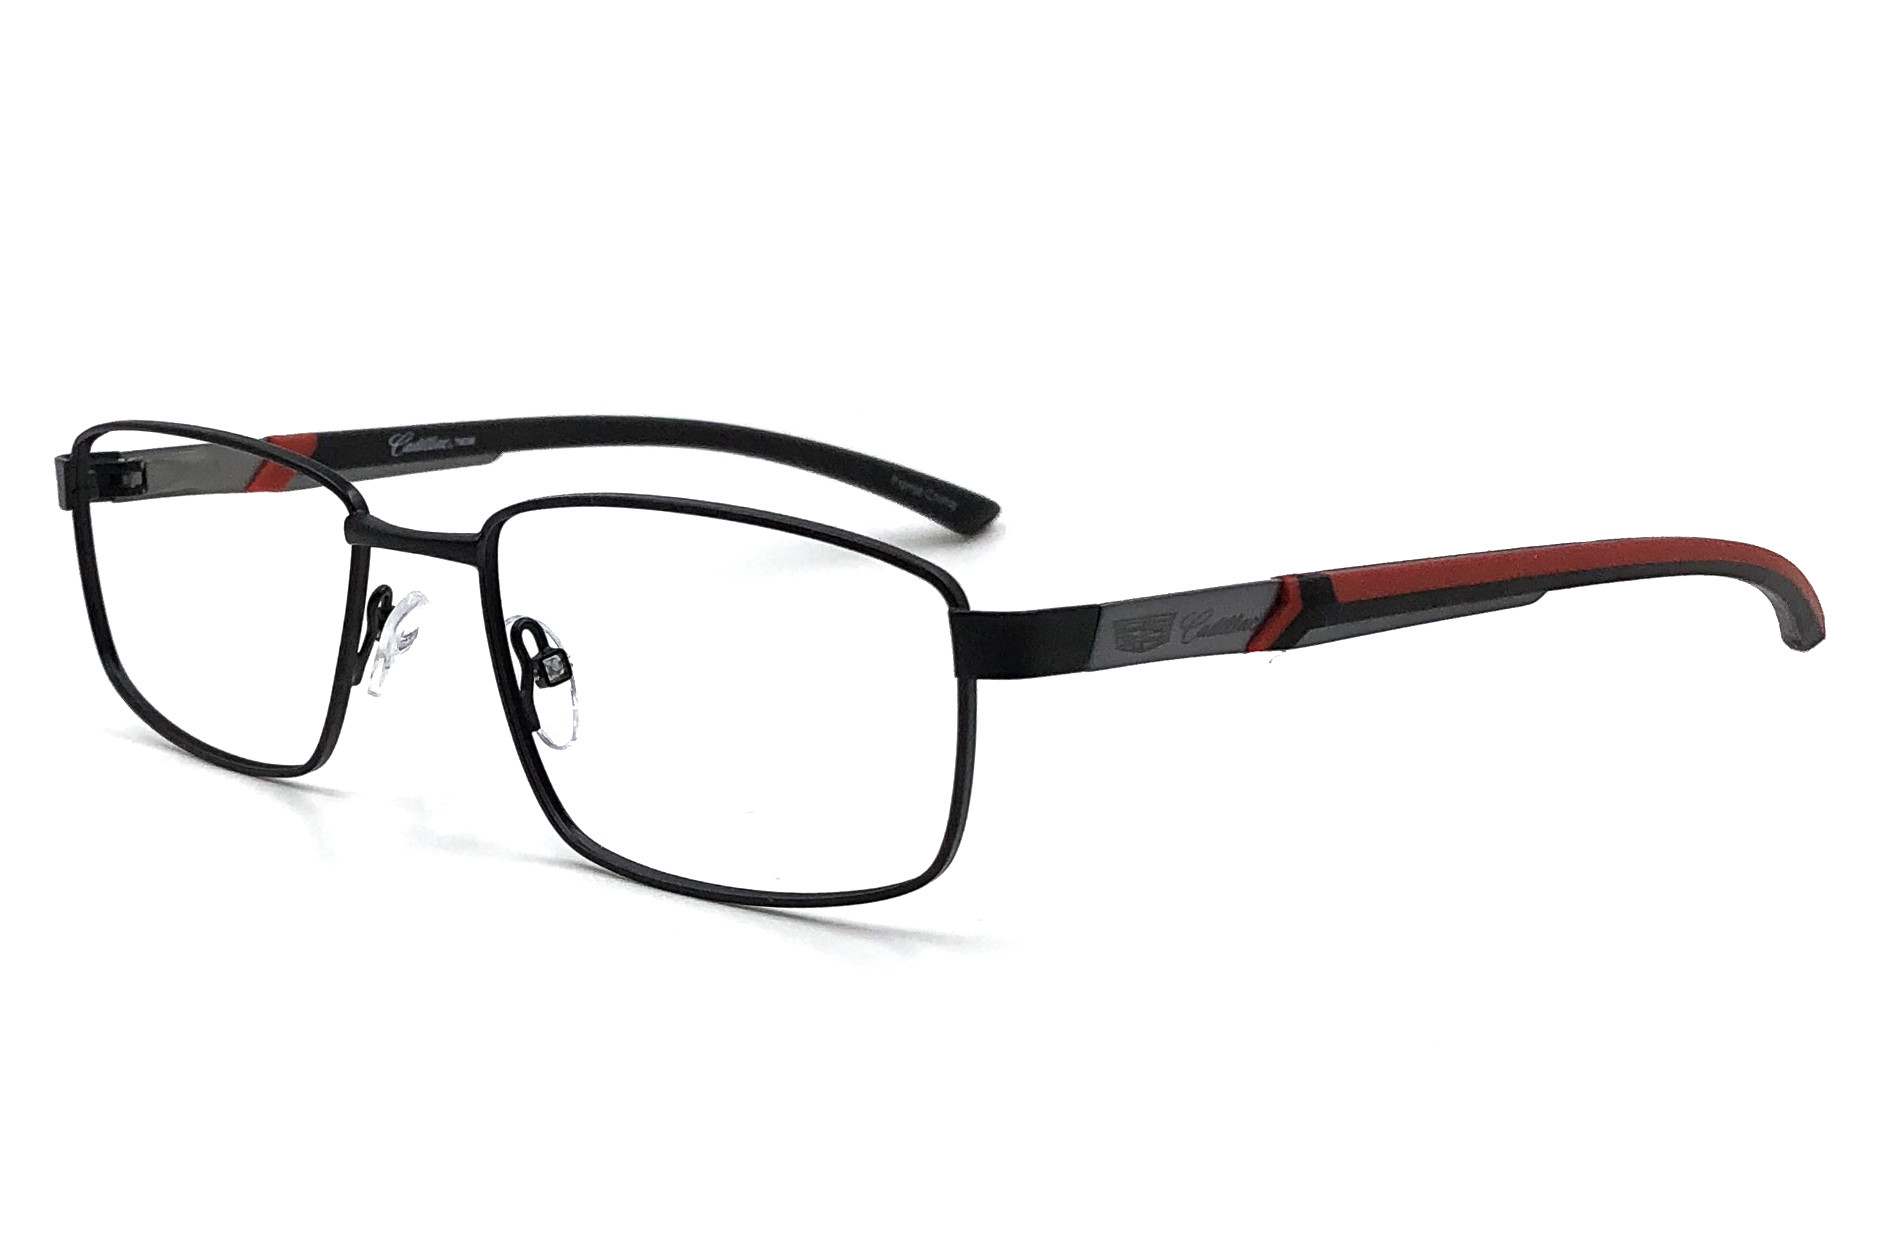 Cadillac Eyewear CC533 Eyeglasses - Cadillac Eyewear Authorized ...